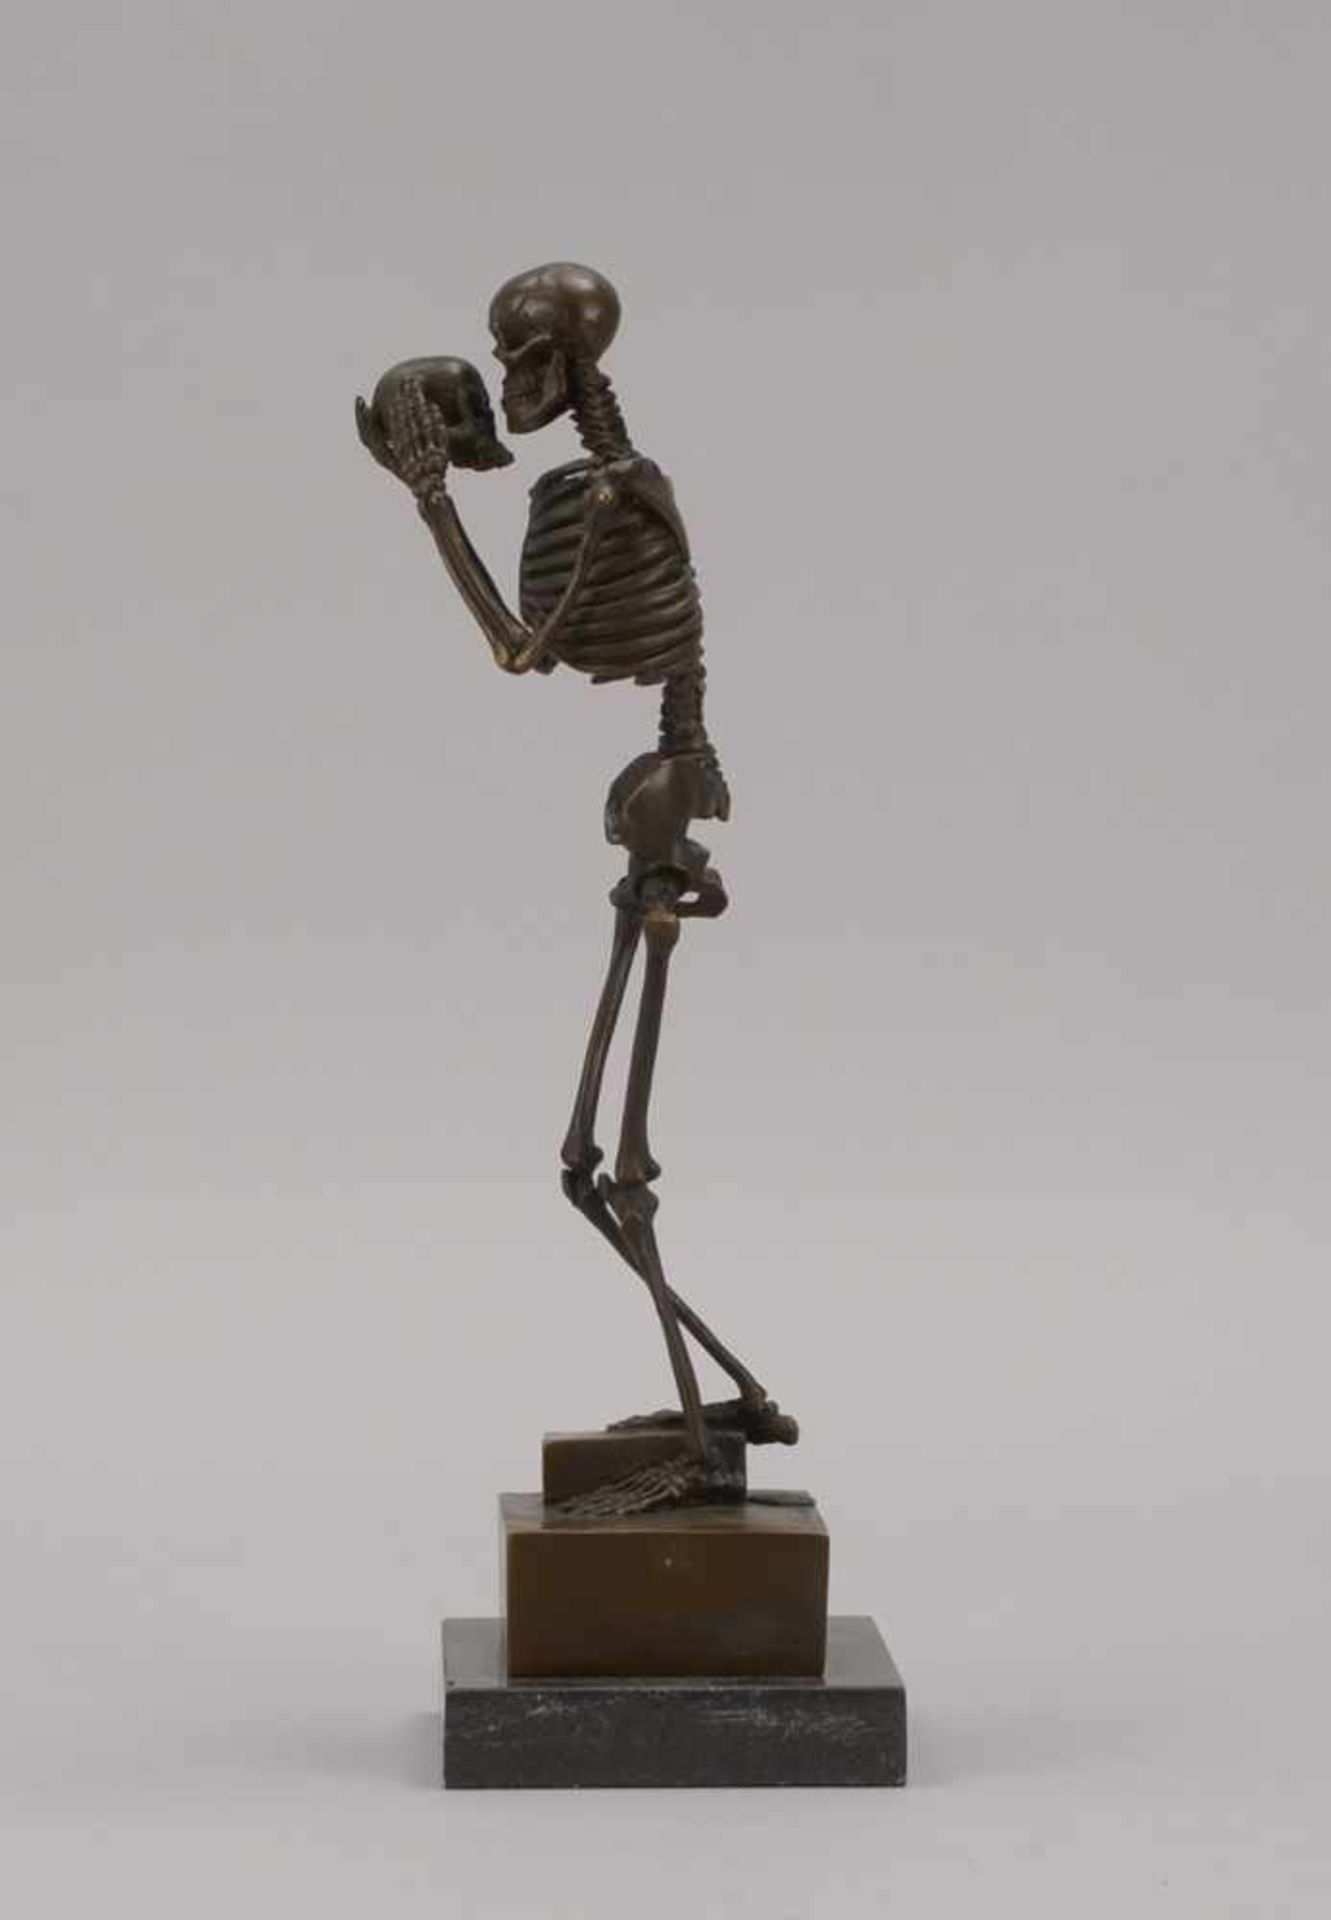 Bronzefigur, 'Skelett' (einen Schädel haltend/auf einem Buch stehend dagestellt), signiert 'Carl